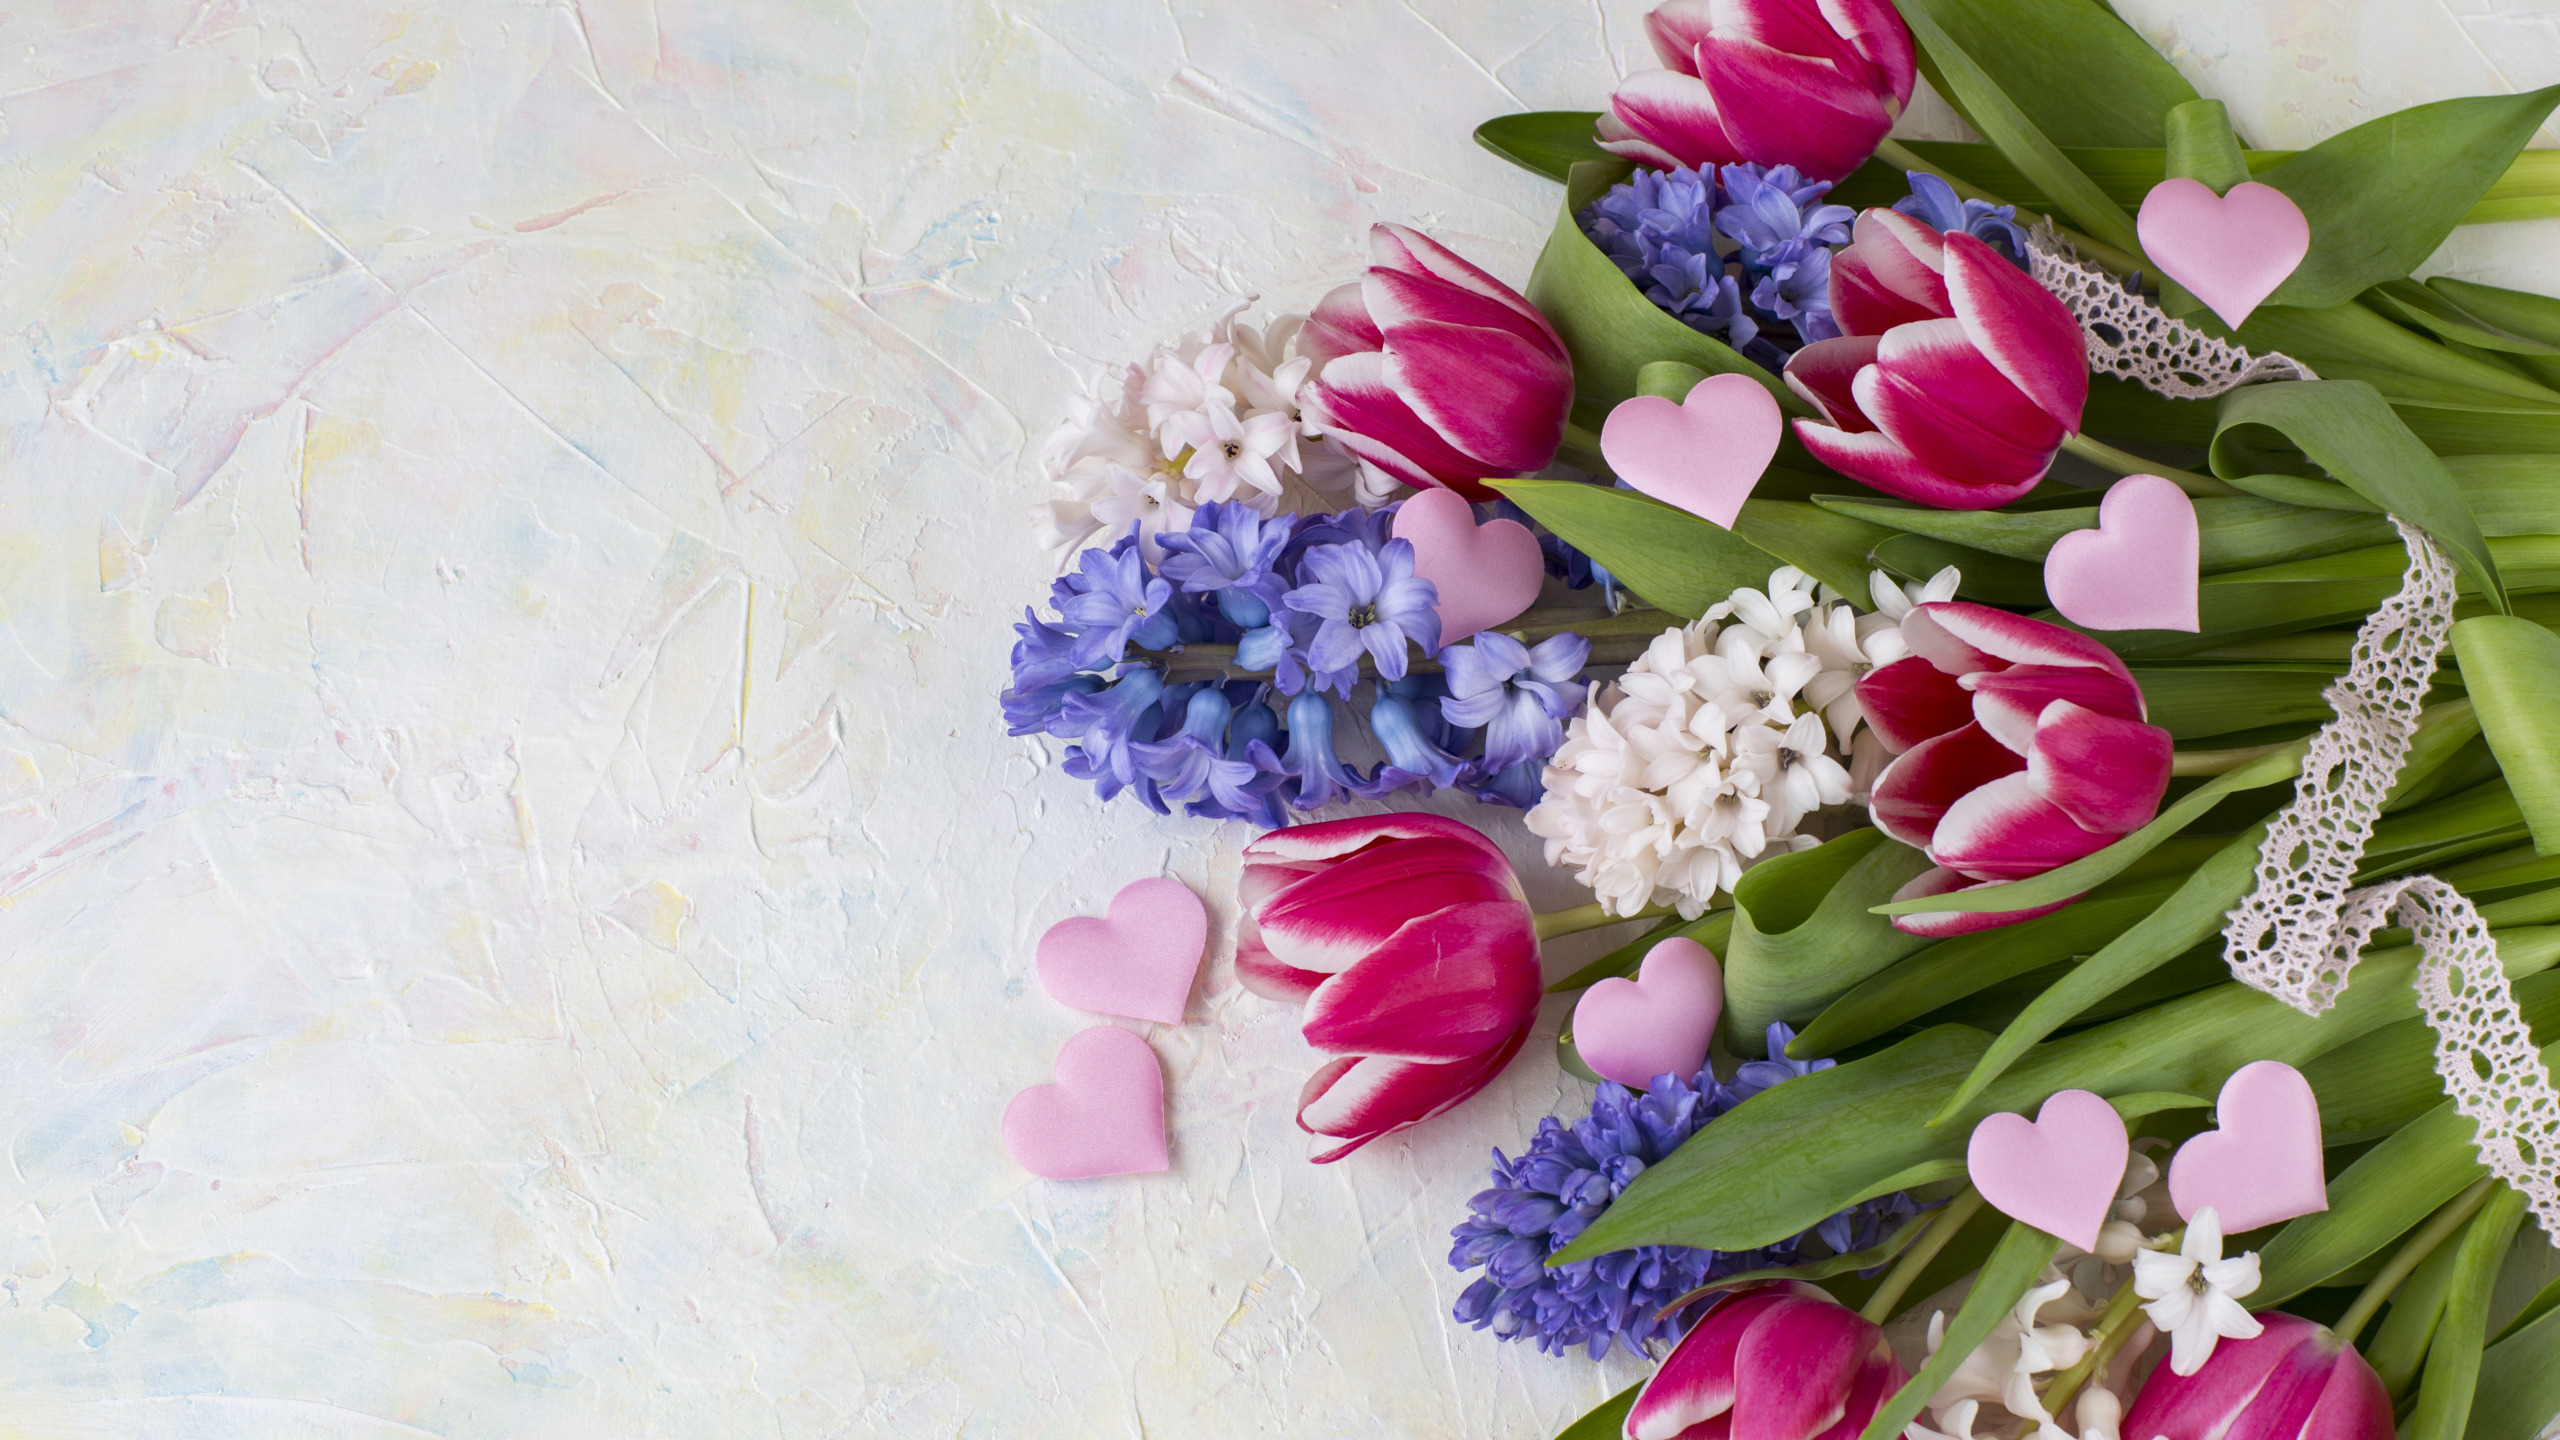 Букет весенних поздравлений. Пионы, левкои, тюльпаны, гиацинты. Весенний букет. Стильные весенние букеты. Букет весенних цветов.